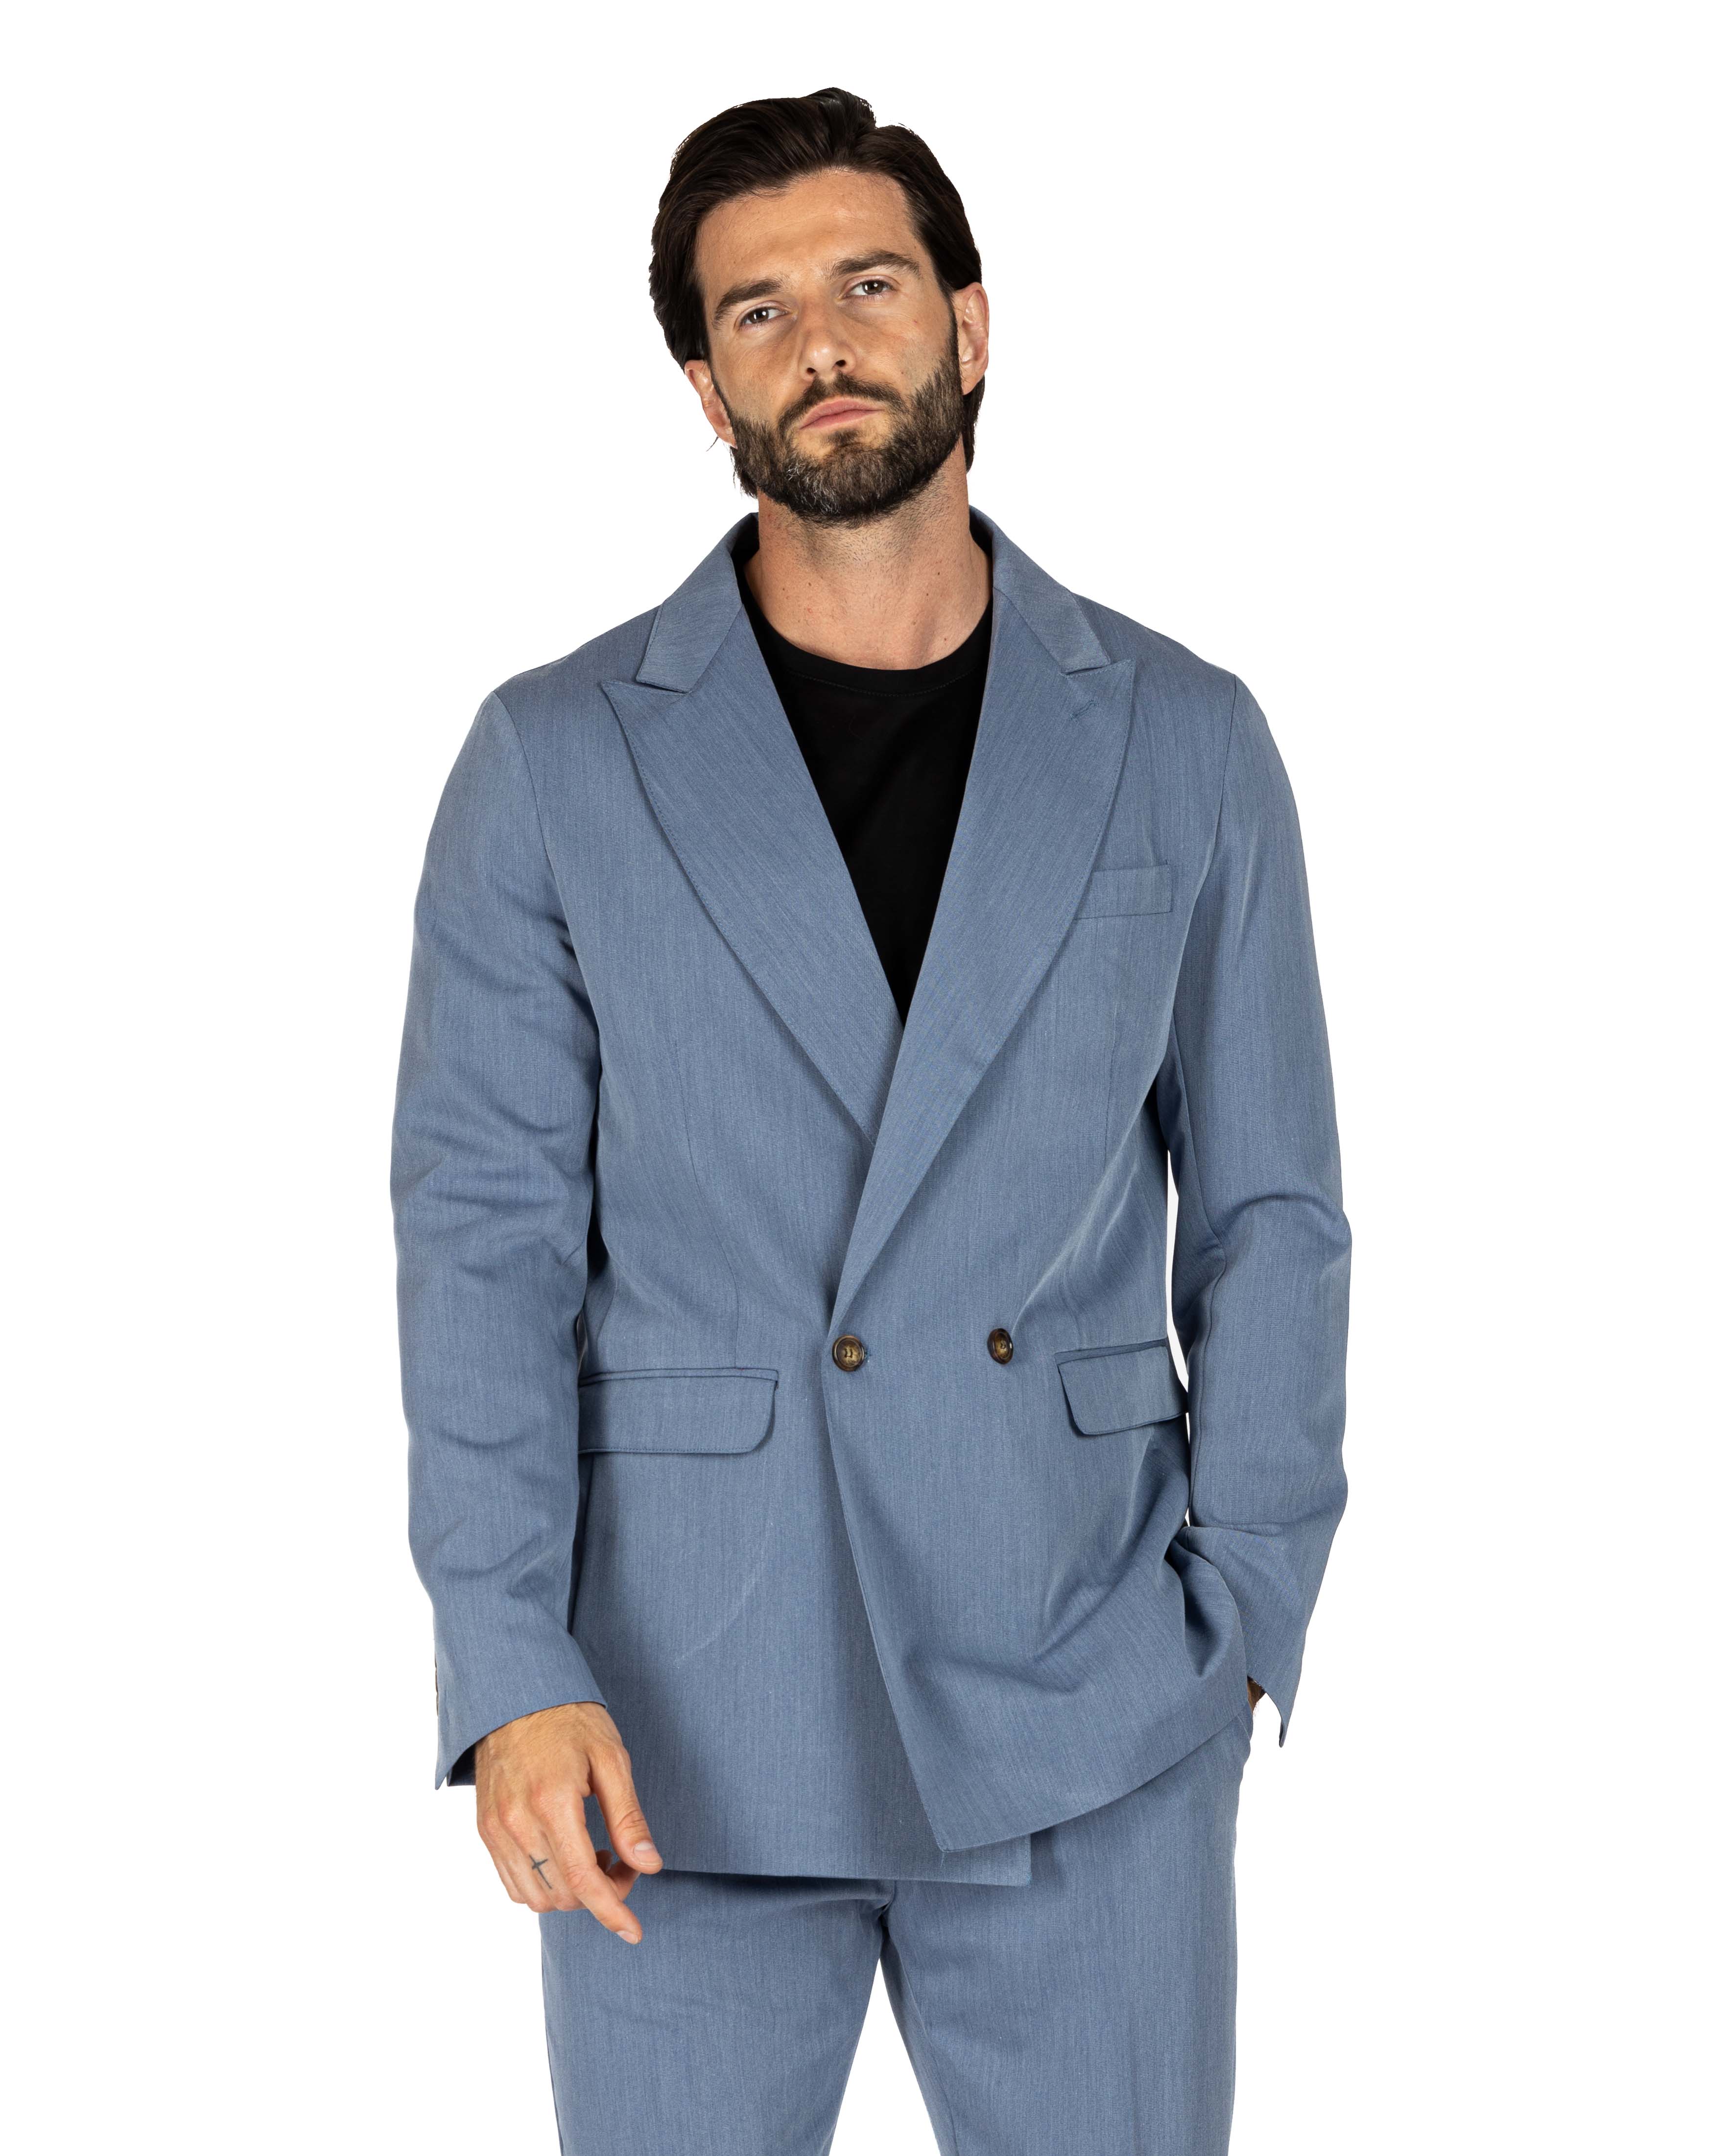 Italian 2.0 - giacca doppiopetto blu chiaro